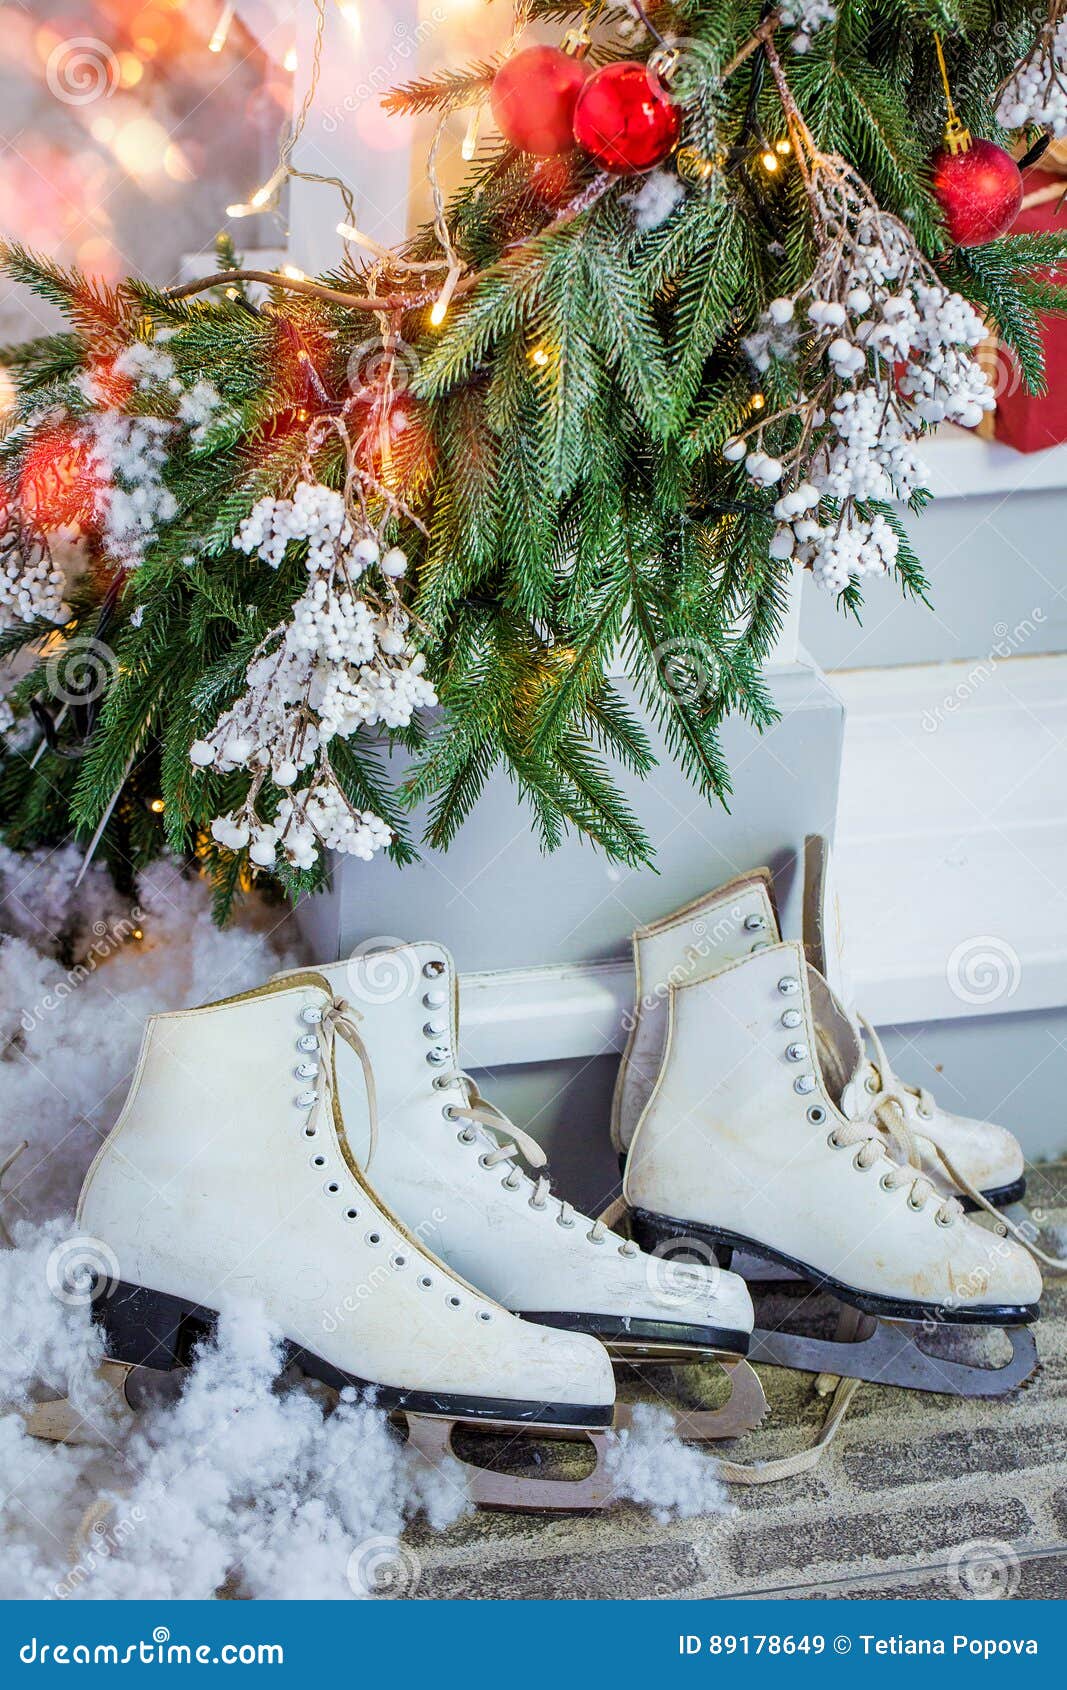 Los regalos de la Navidad, patines, se llevan debajo del árbol